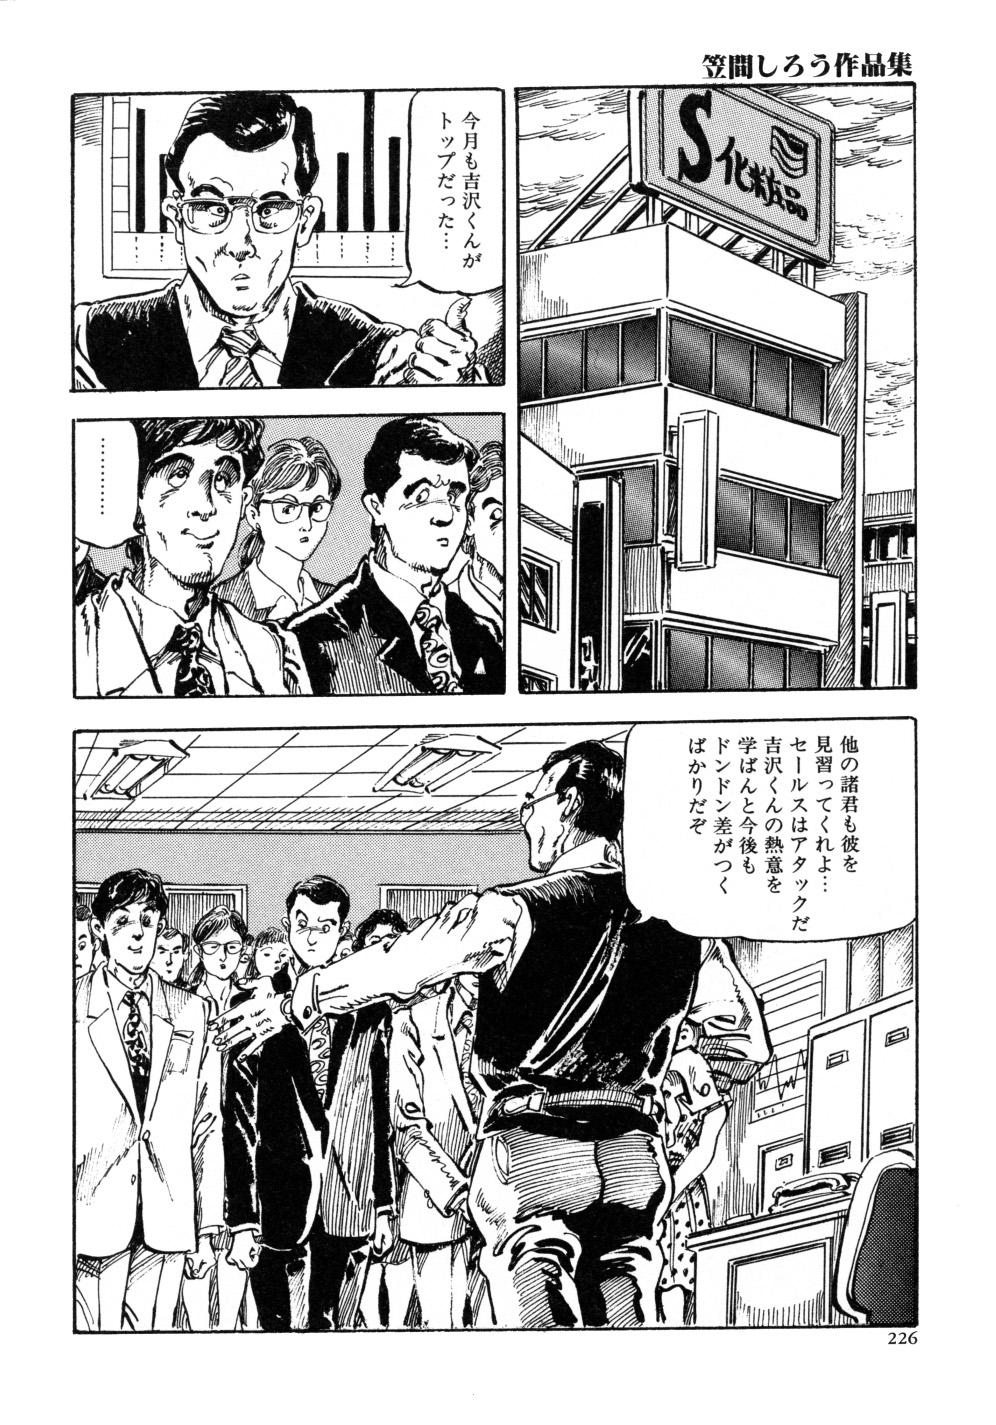 Kasama Shirou Sakuhin Vol. 3 Chijyoku no Kokuin 233